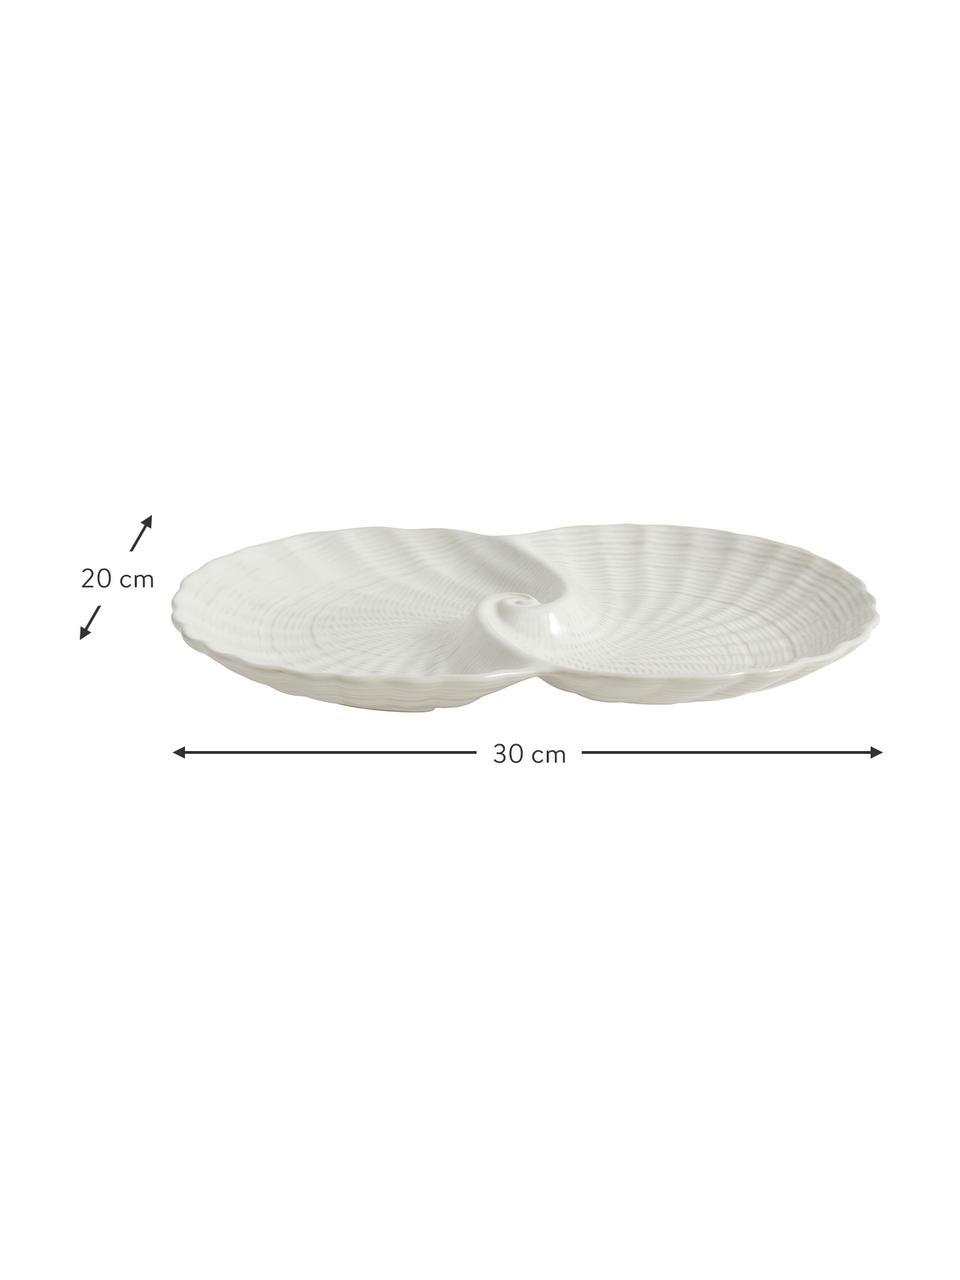 Deko-Schale Gullfoss, Keramik, Weiß, B 30 x T 20 cm